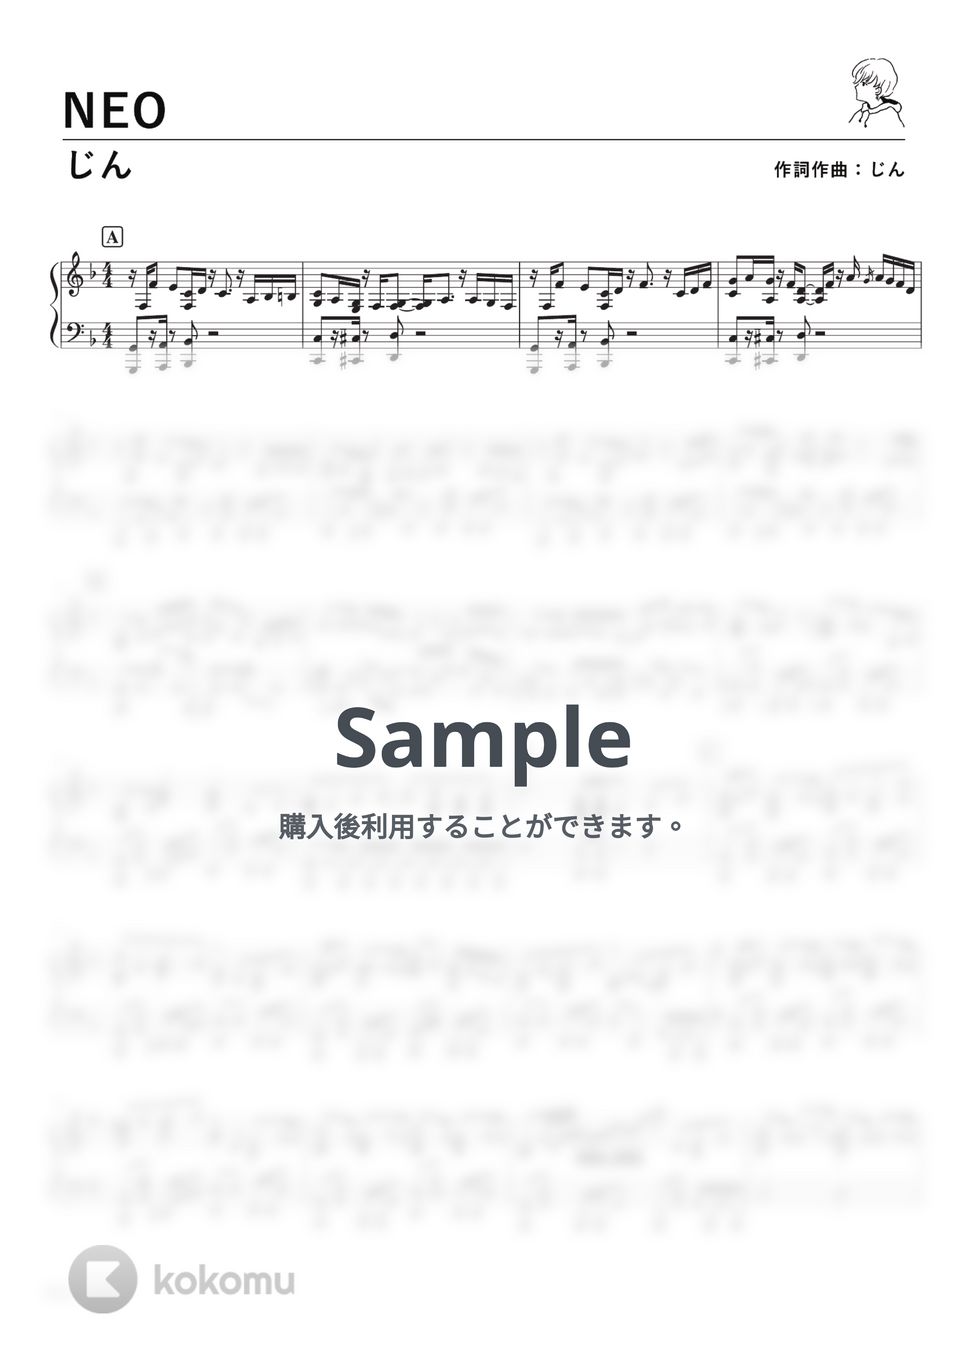 じん - NEO (PianoSolo) by 深根